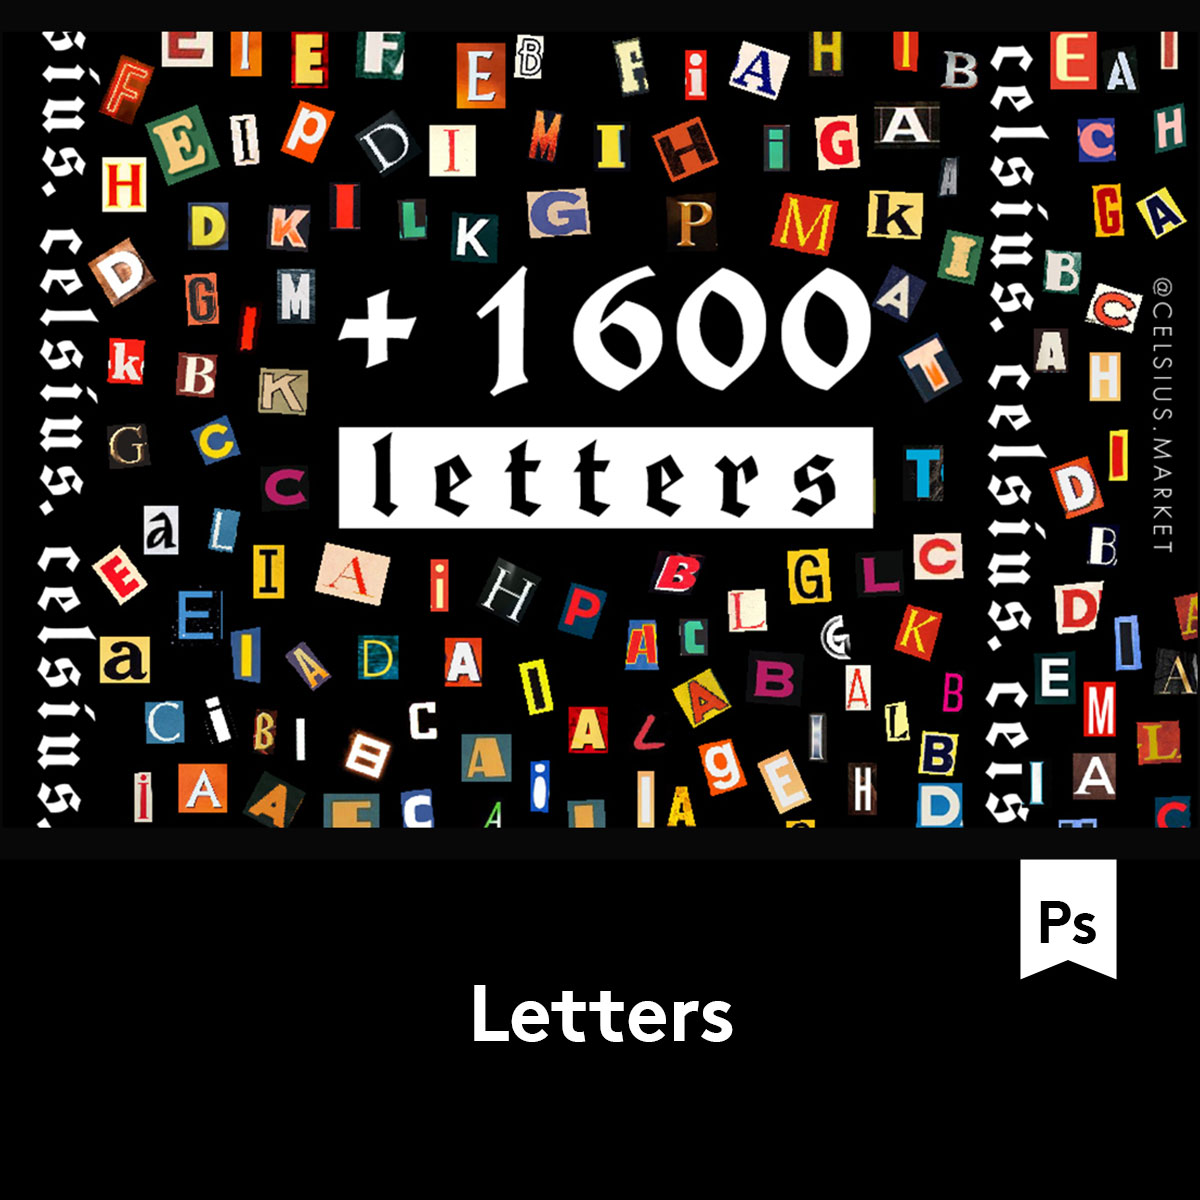 1600多个多样式英文字母标志平面广告设计PS背景素材 B2020091001